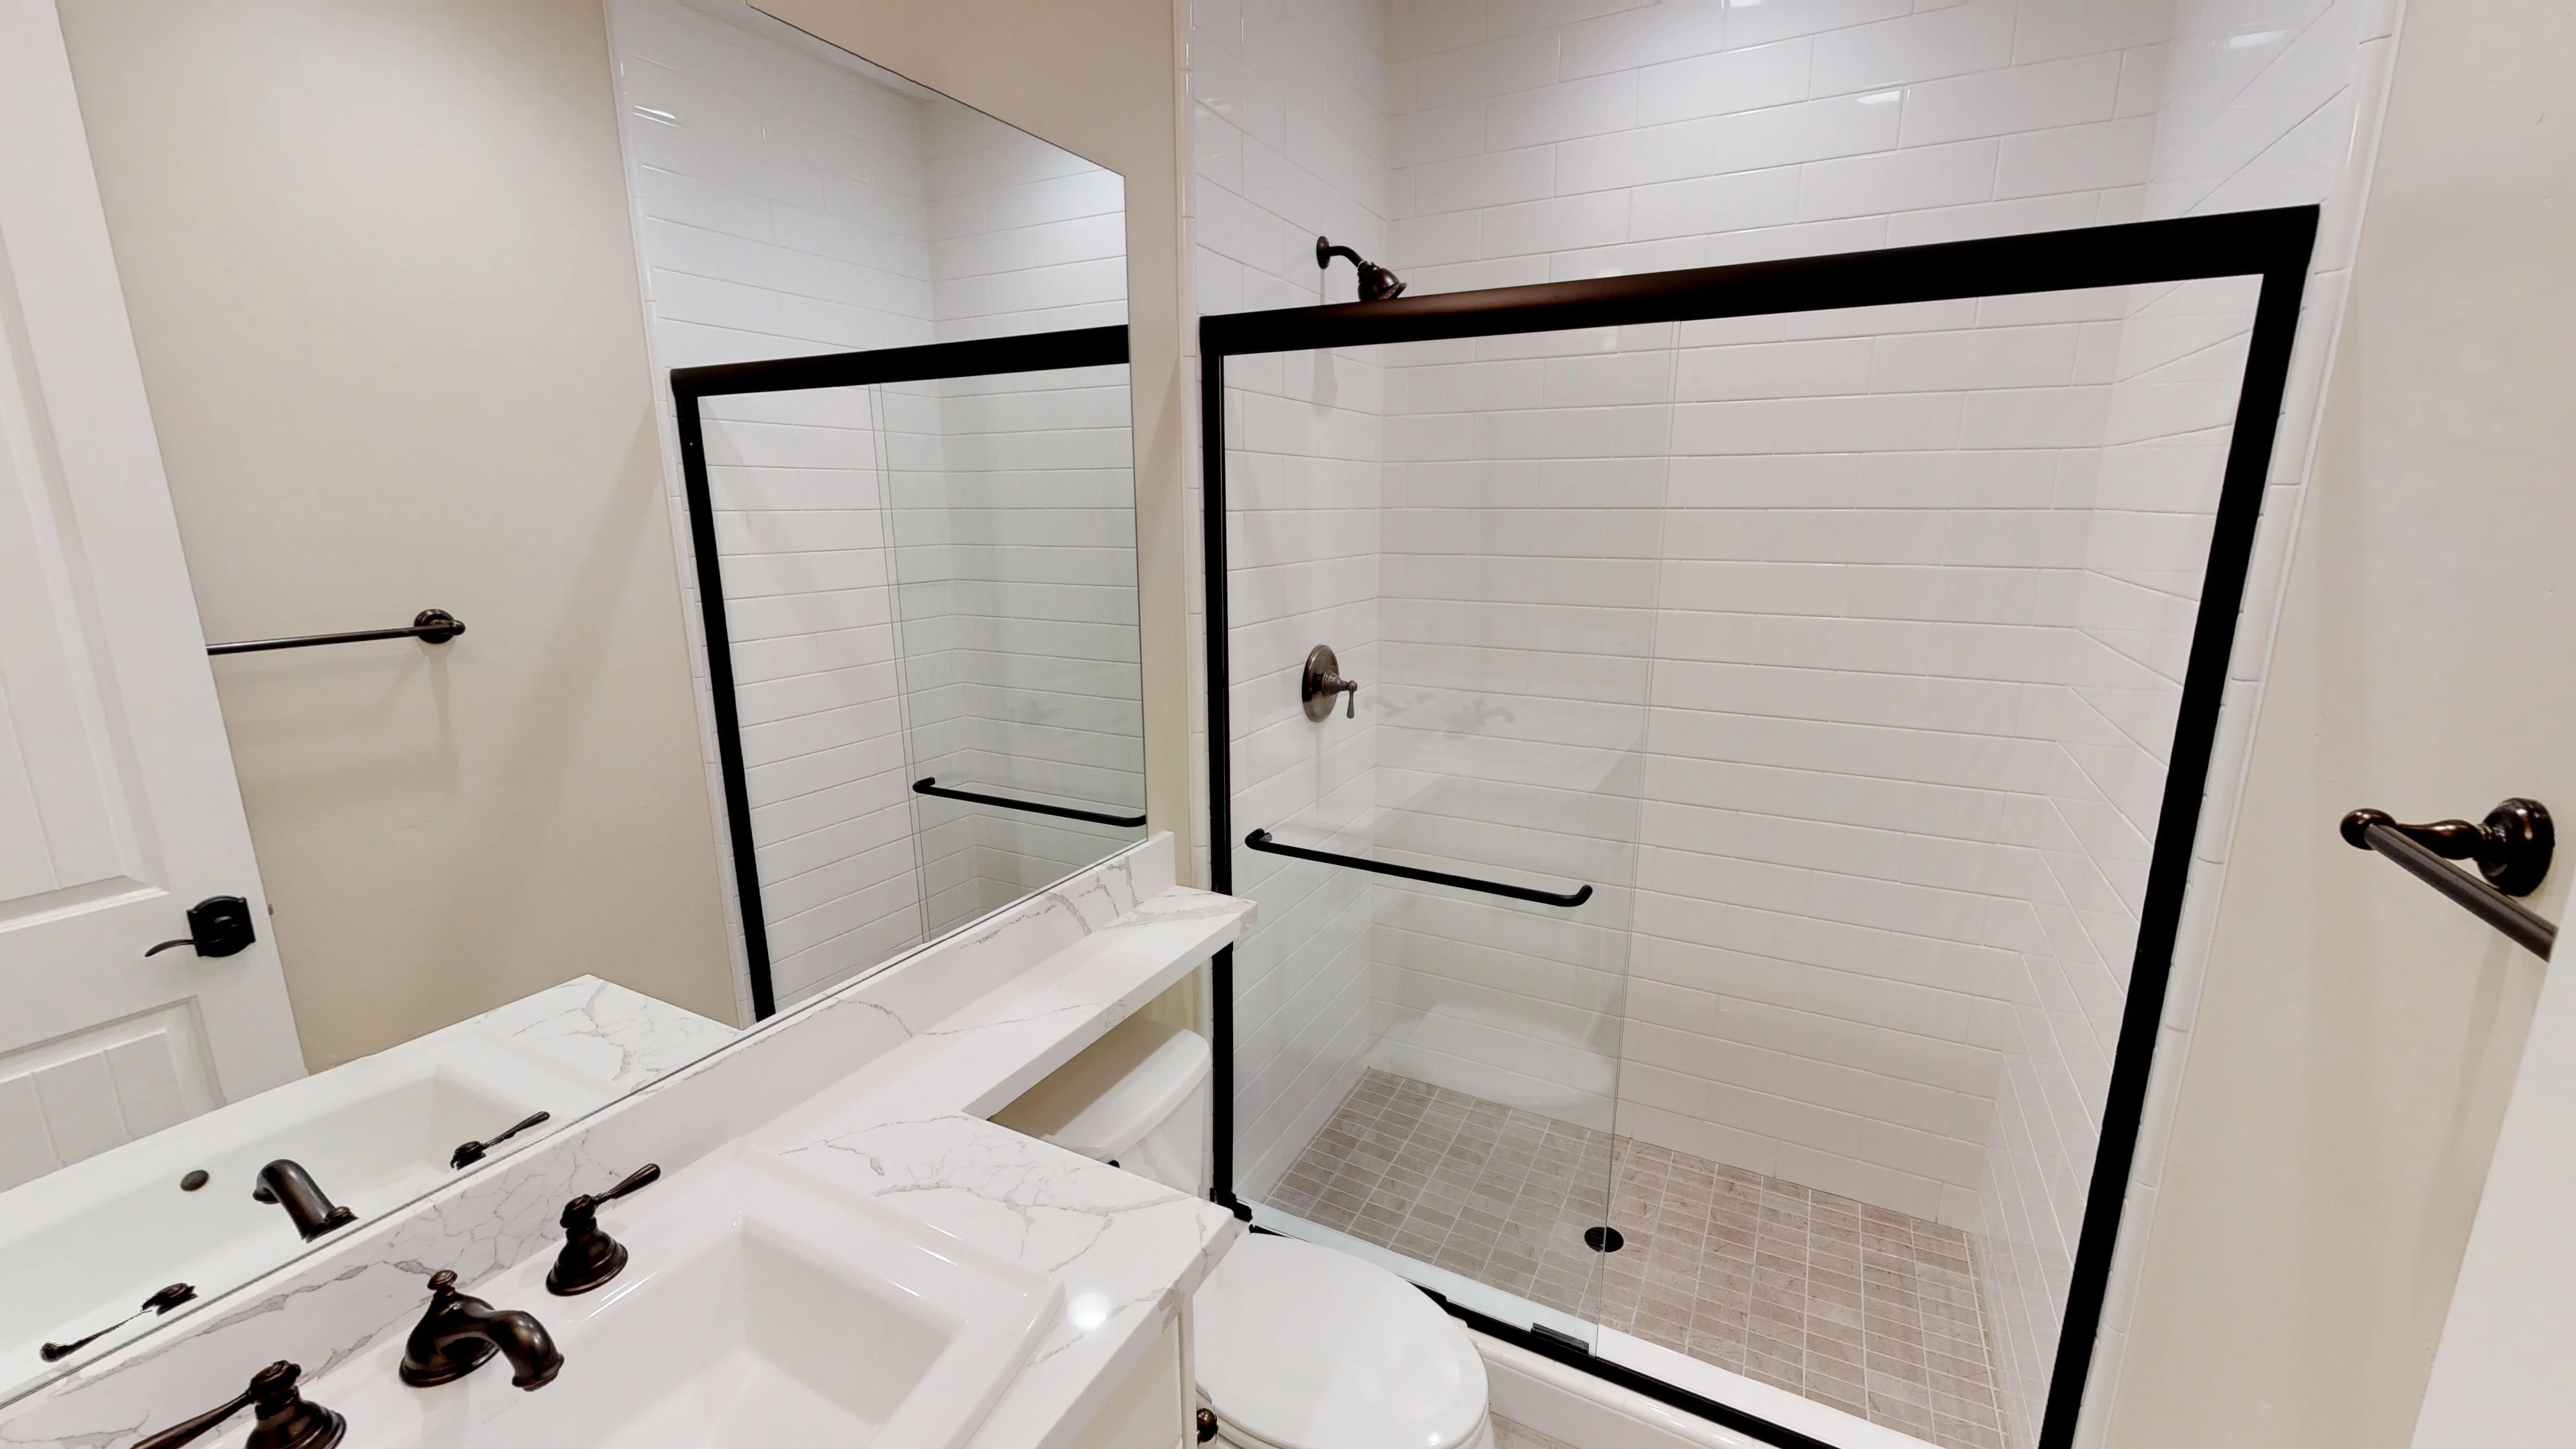 Shower room tiles design | Elite Builder Services